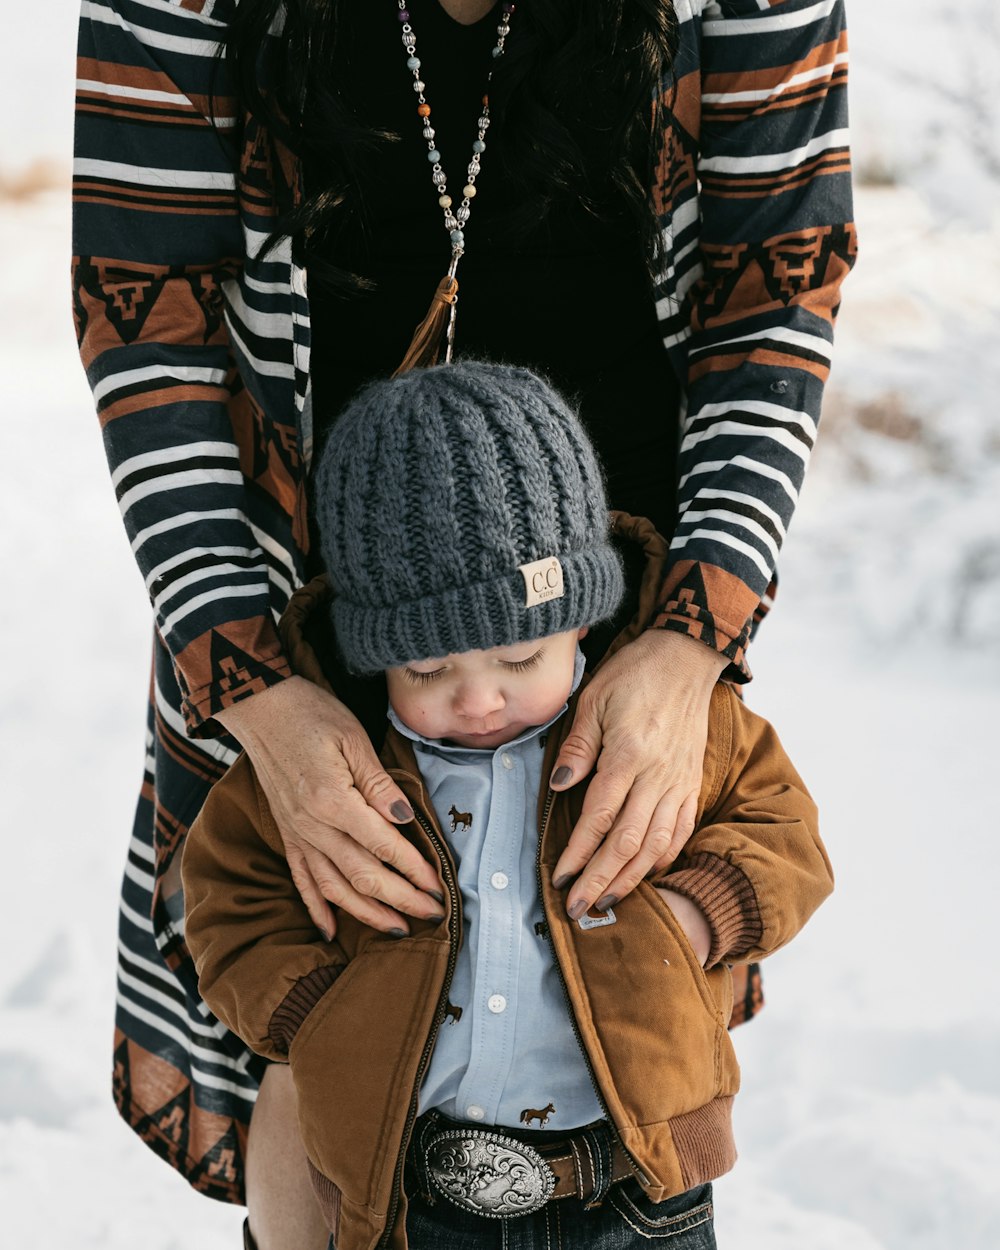 Una mujer sosteniendo a un niño pequeño en la nieve